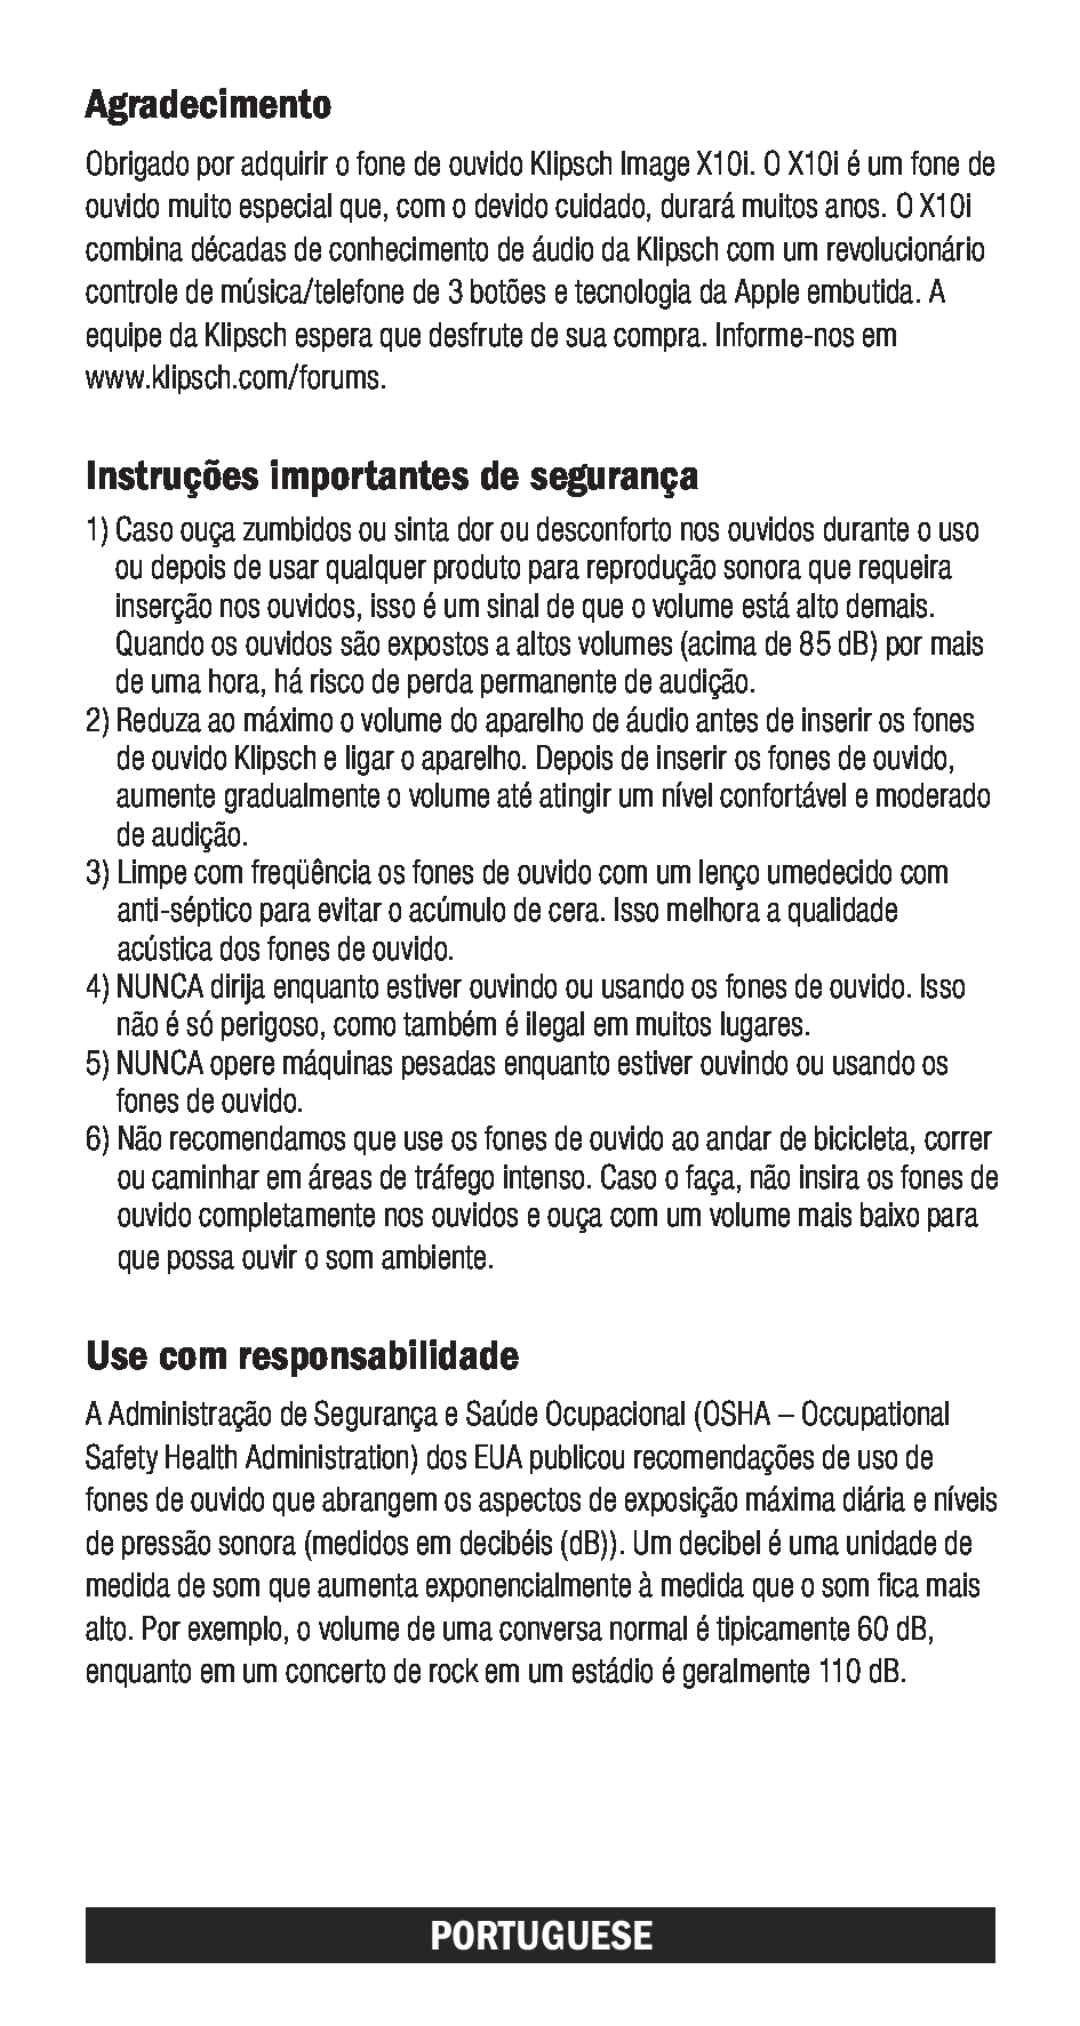 Klipsch X10I owner manual Agradecimento, Instruções importantes de segurança, Use com responsabilidade, Portuguese 